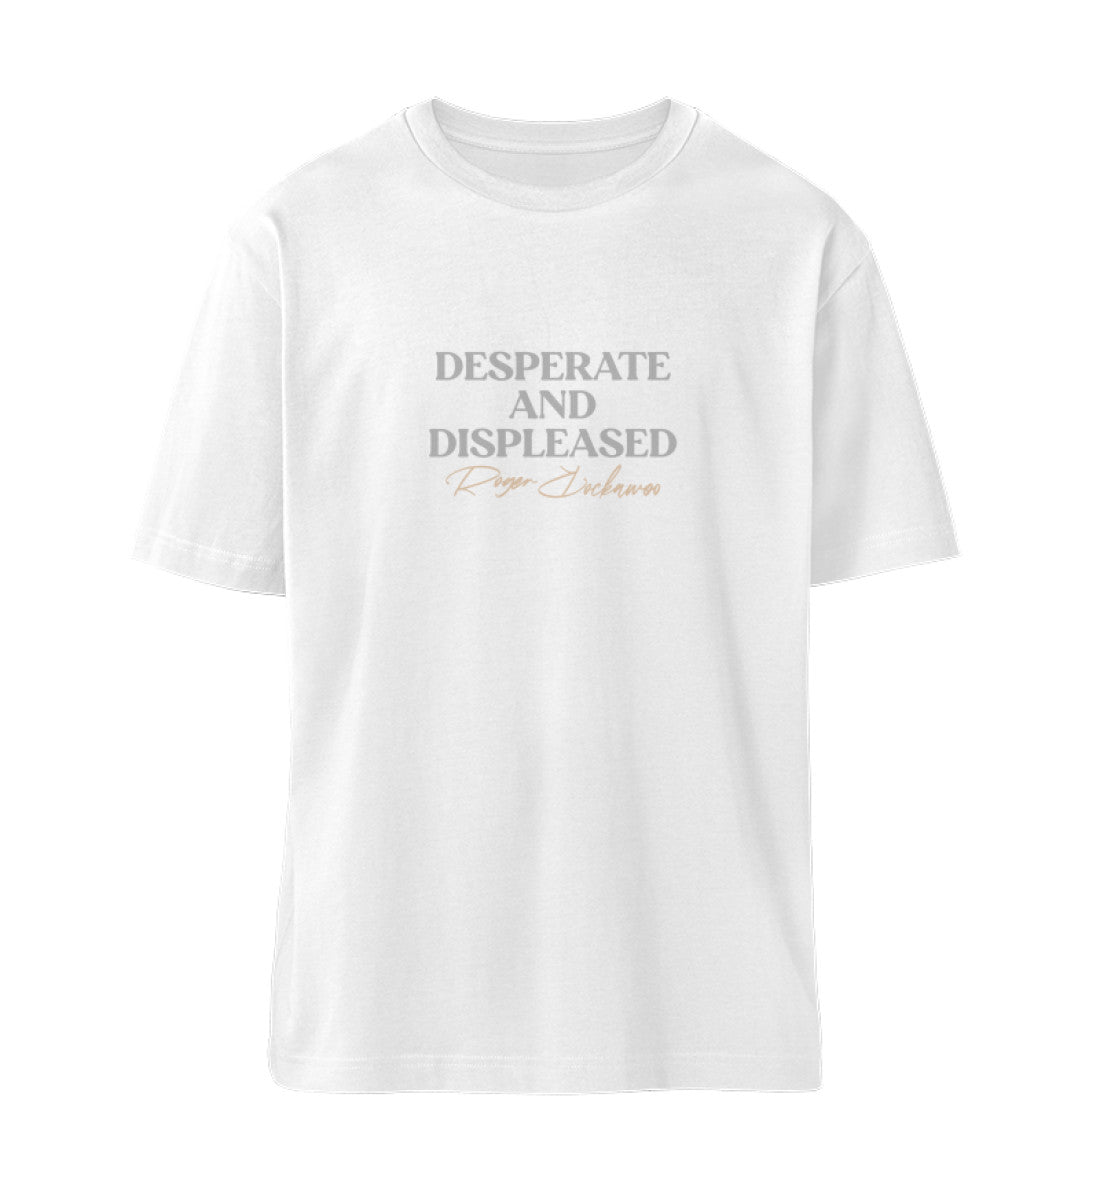 Weißes T-Shirt Unisex Relaxed Fit für Frauen und Männer bedruckt mit dem Design der Roger Rockawoo Kollektion Desperate and displeased